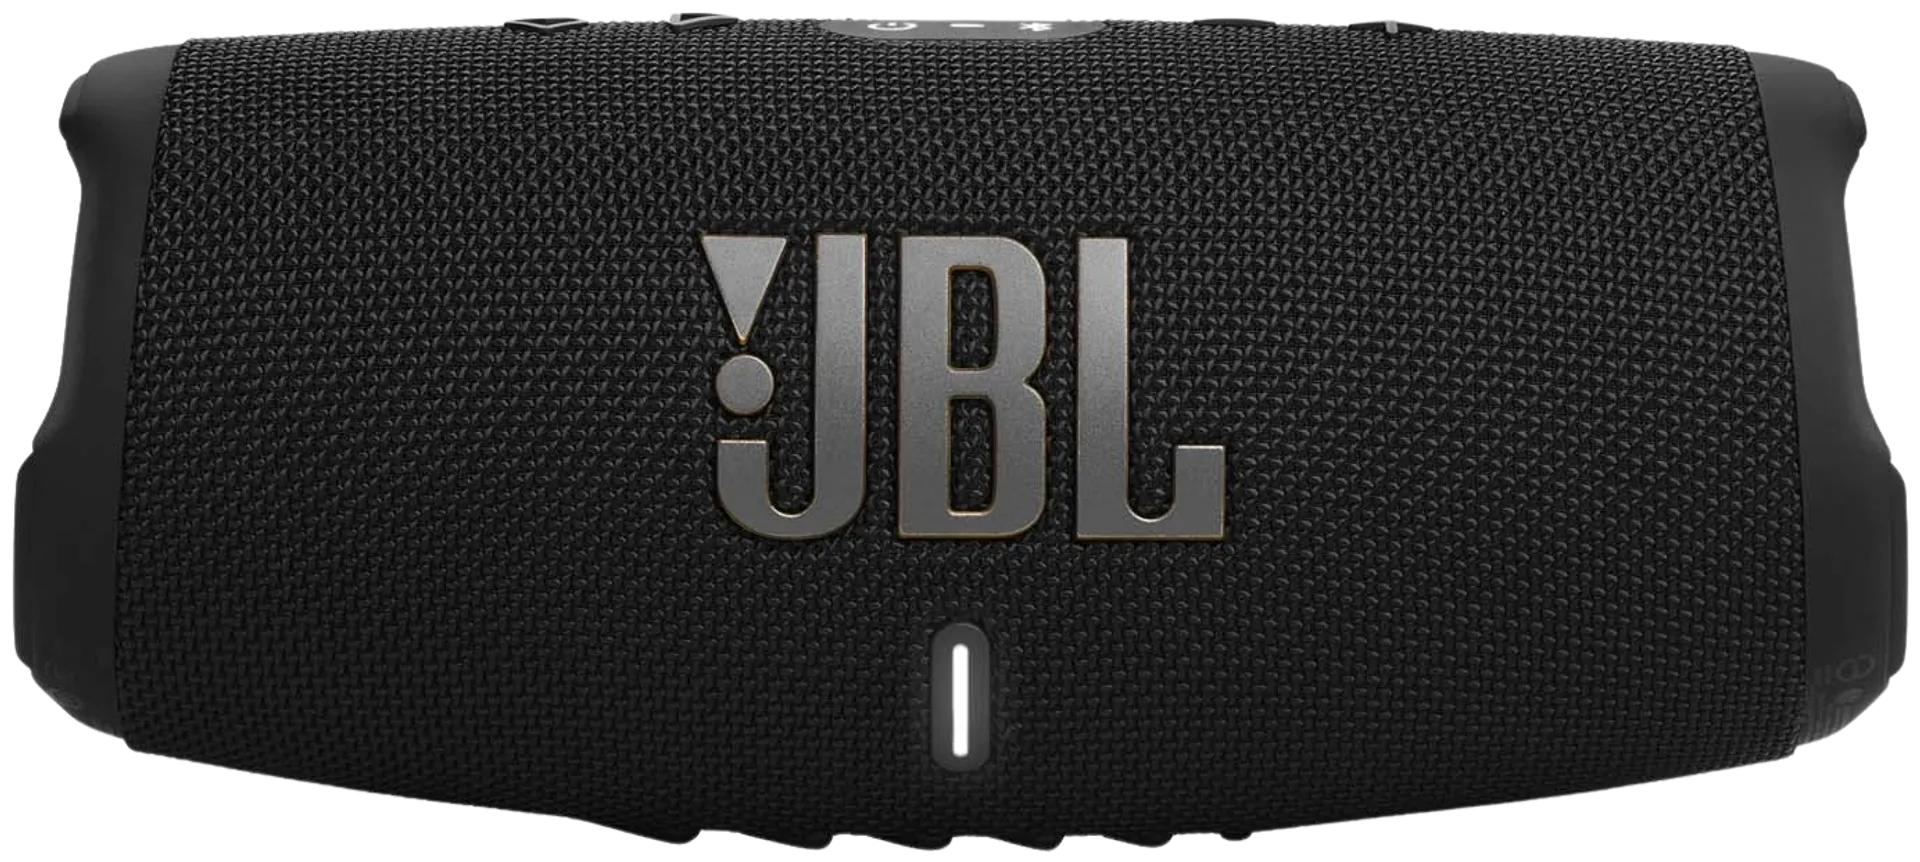 JBL Bluetooth-kaiutin Charge 5 WiFi musta - 2